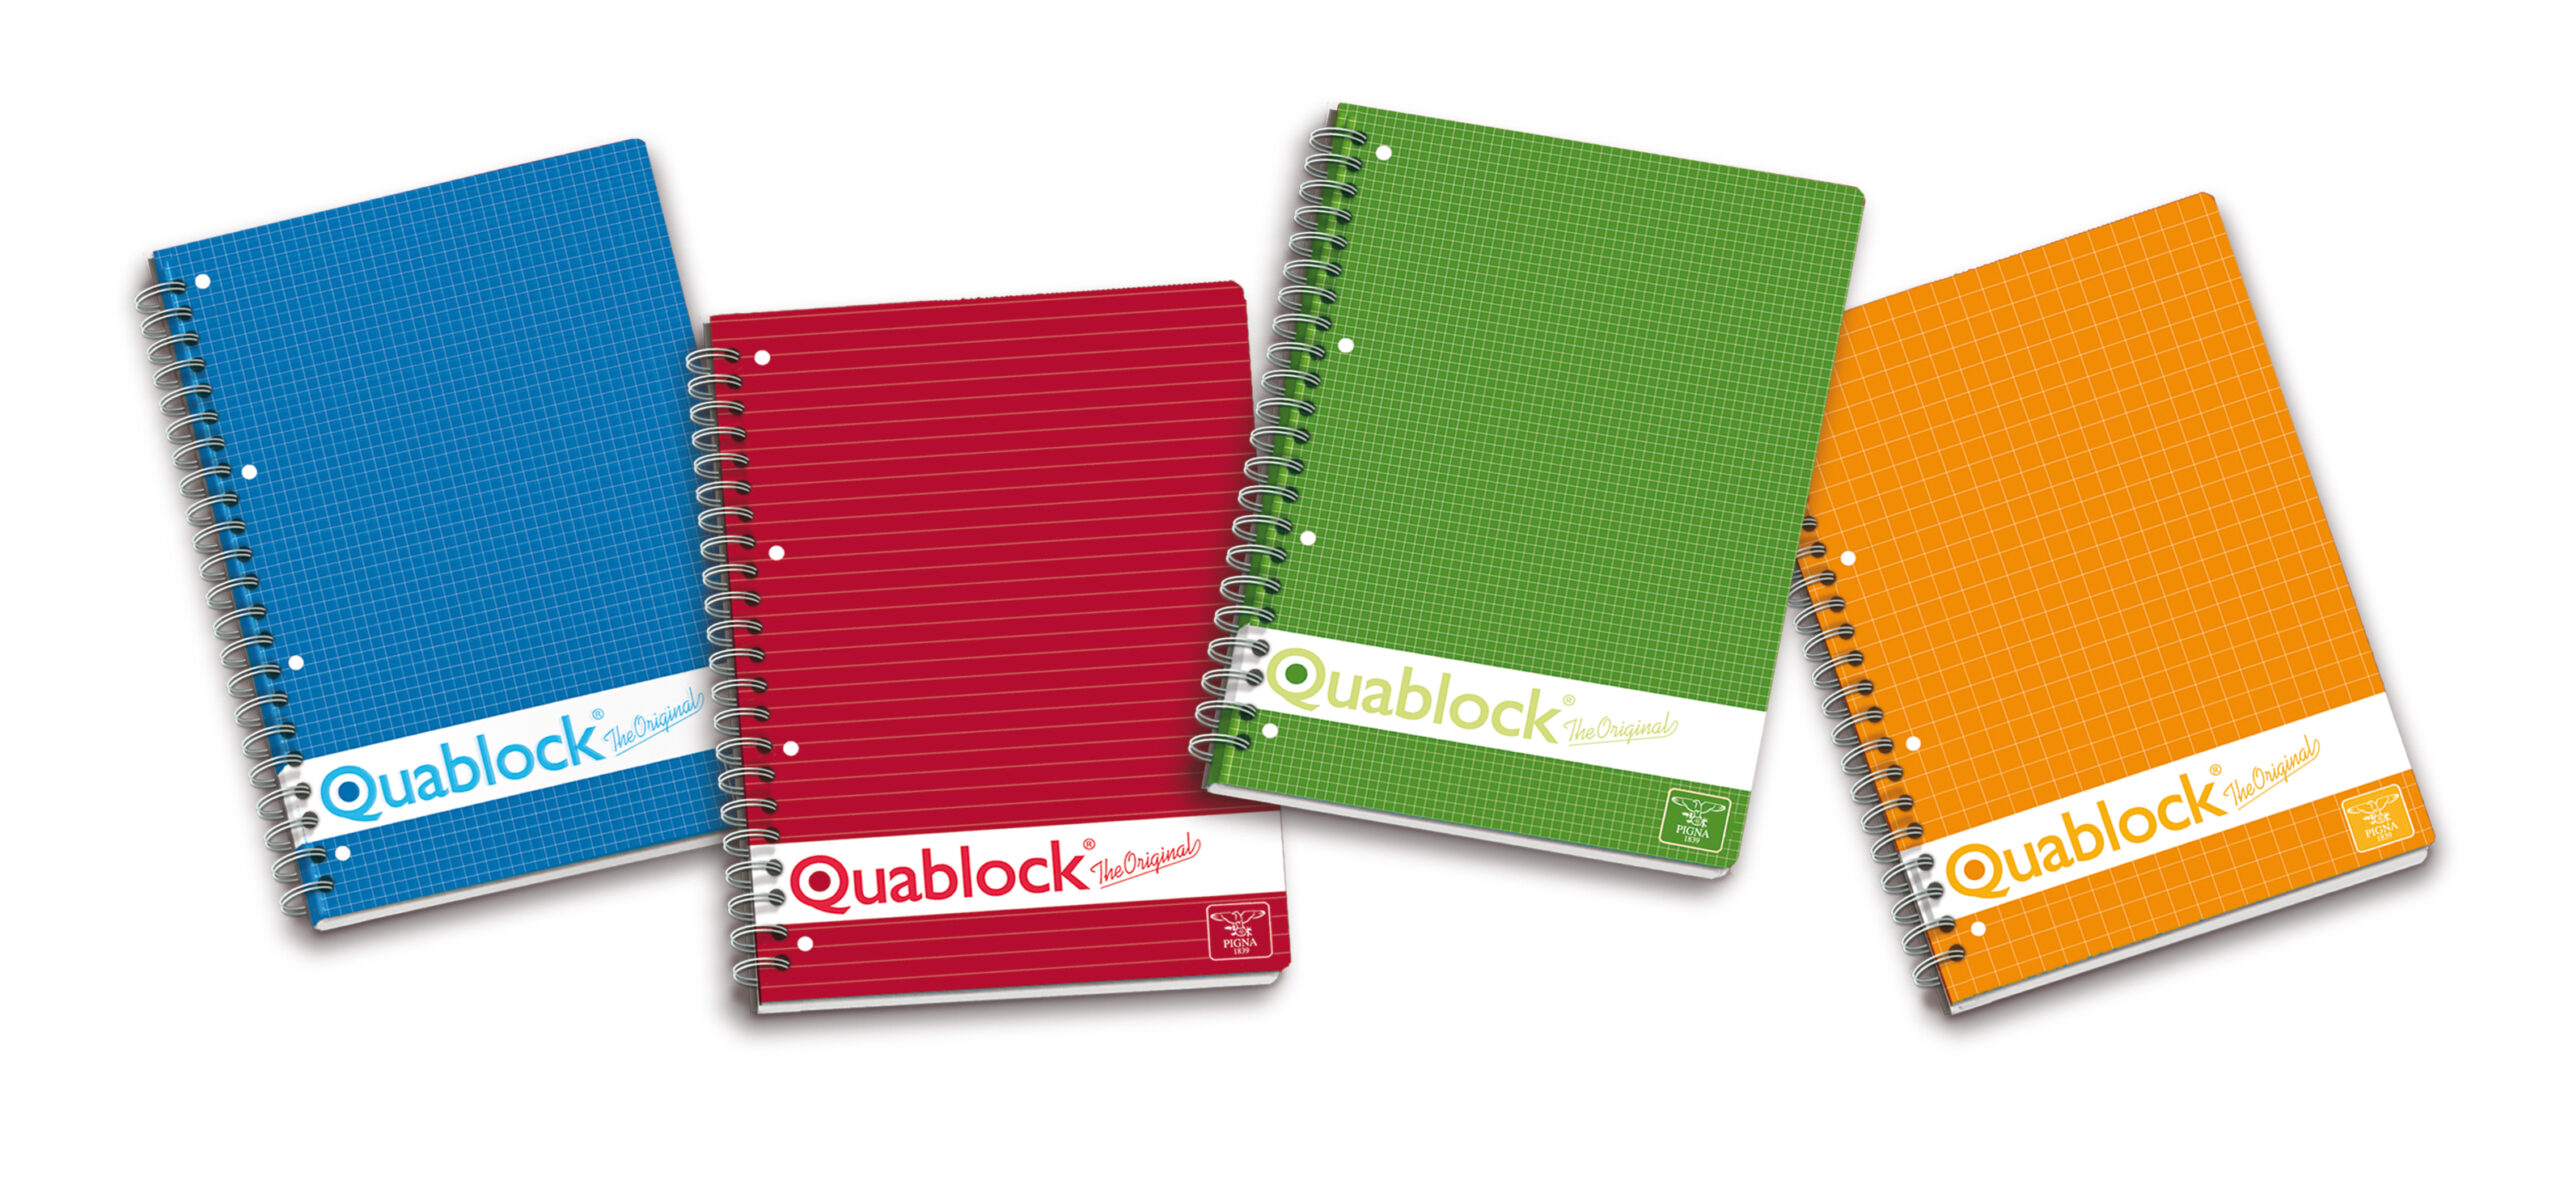 Blocchi Quablock Sp A4 5mm Pigna 02000015m 8005235323094